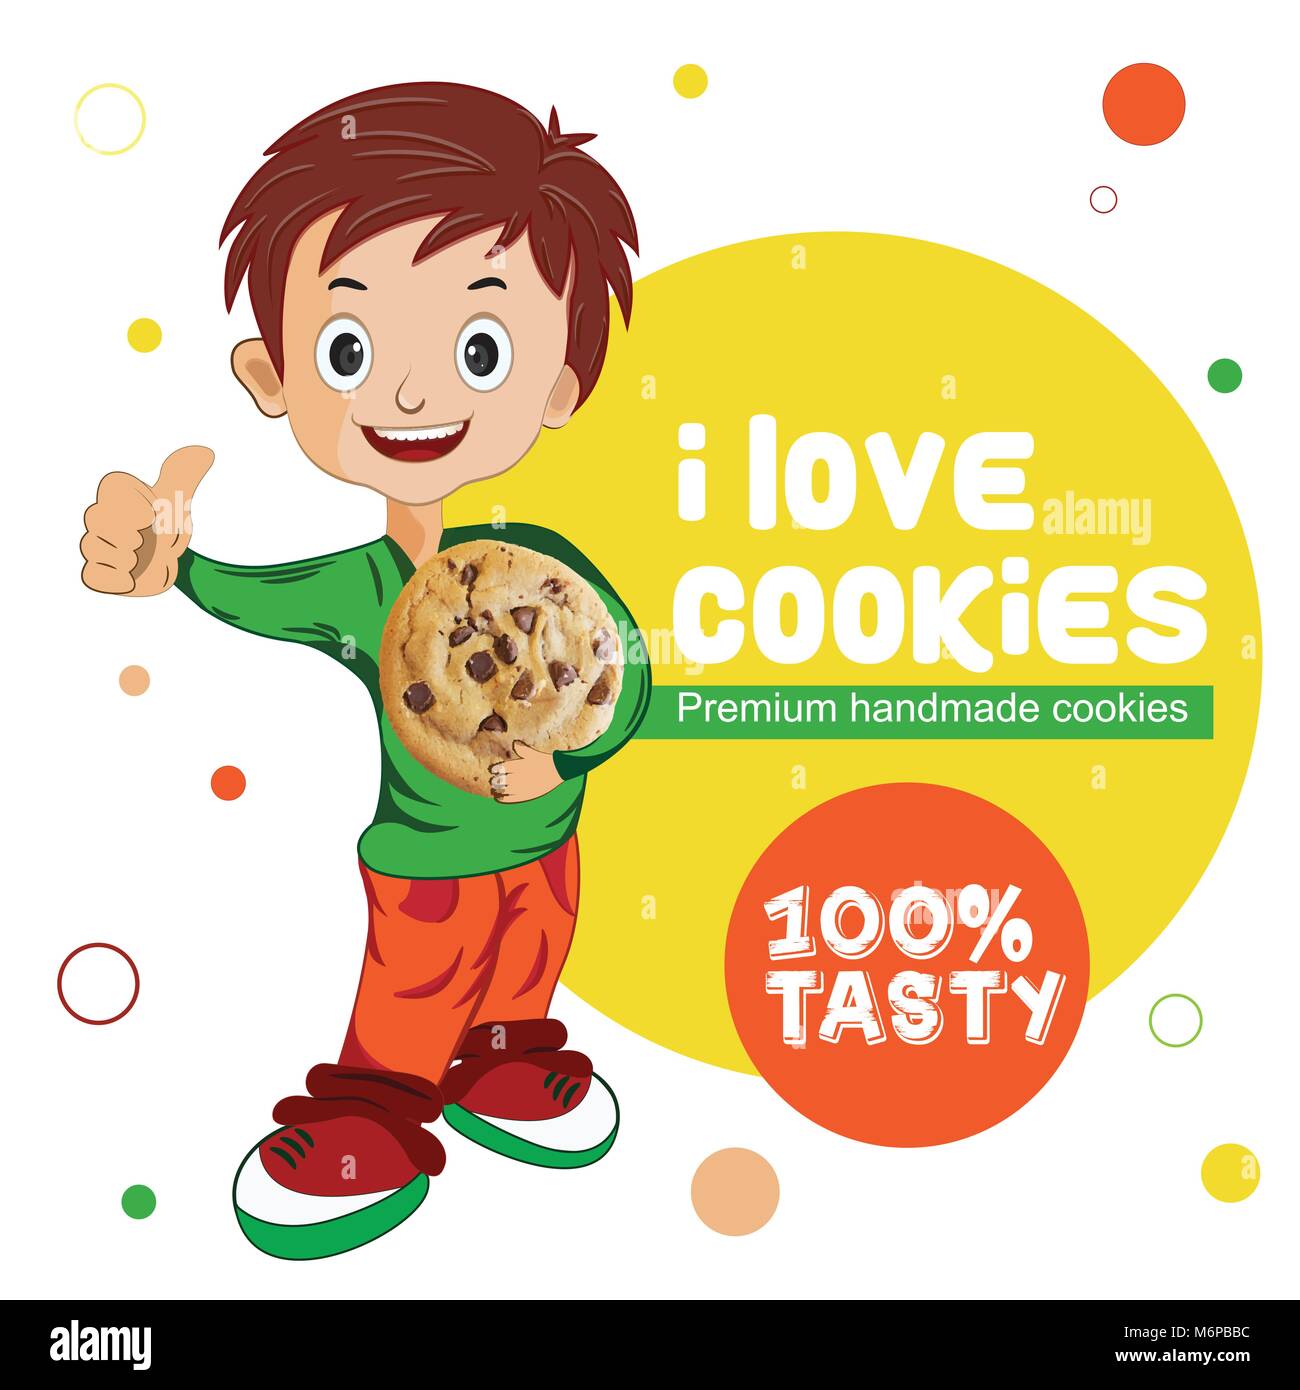 Dies ist Cookies Kinder visuelle, leicht in Bäckerei, Konditorei einsetzbar, Kinder, Verpackung, usw. Diese bereit ist, Banner zu verwenden. Stock Vektor